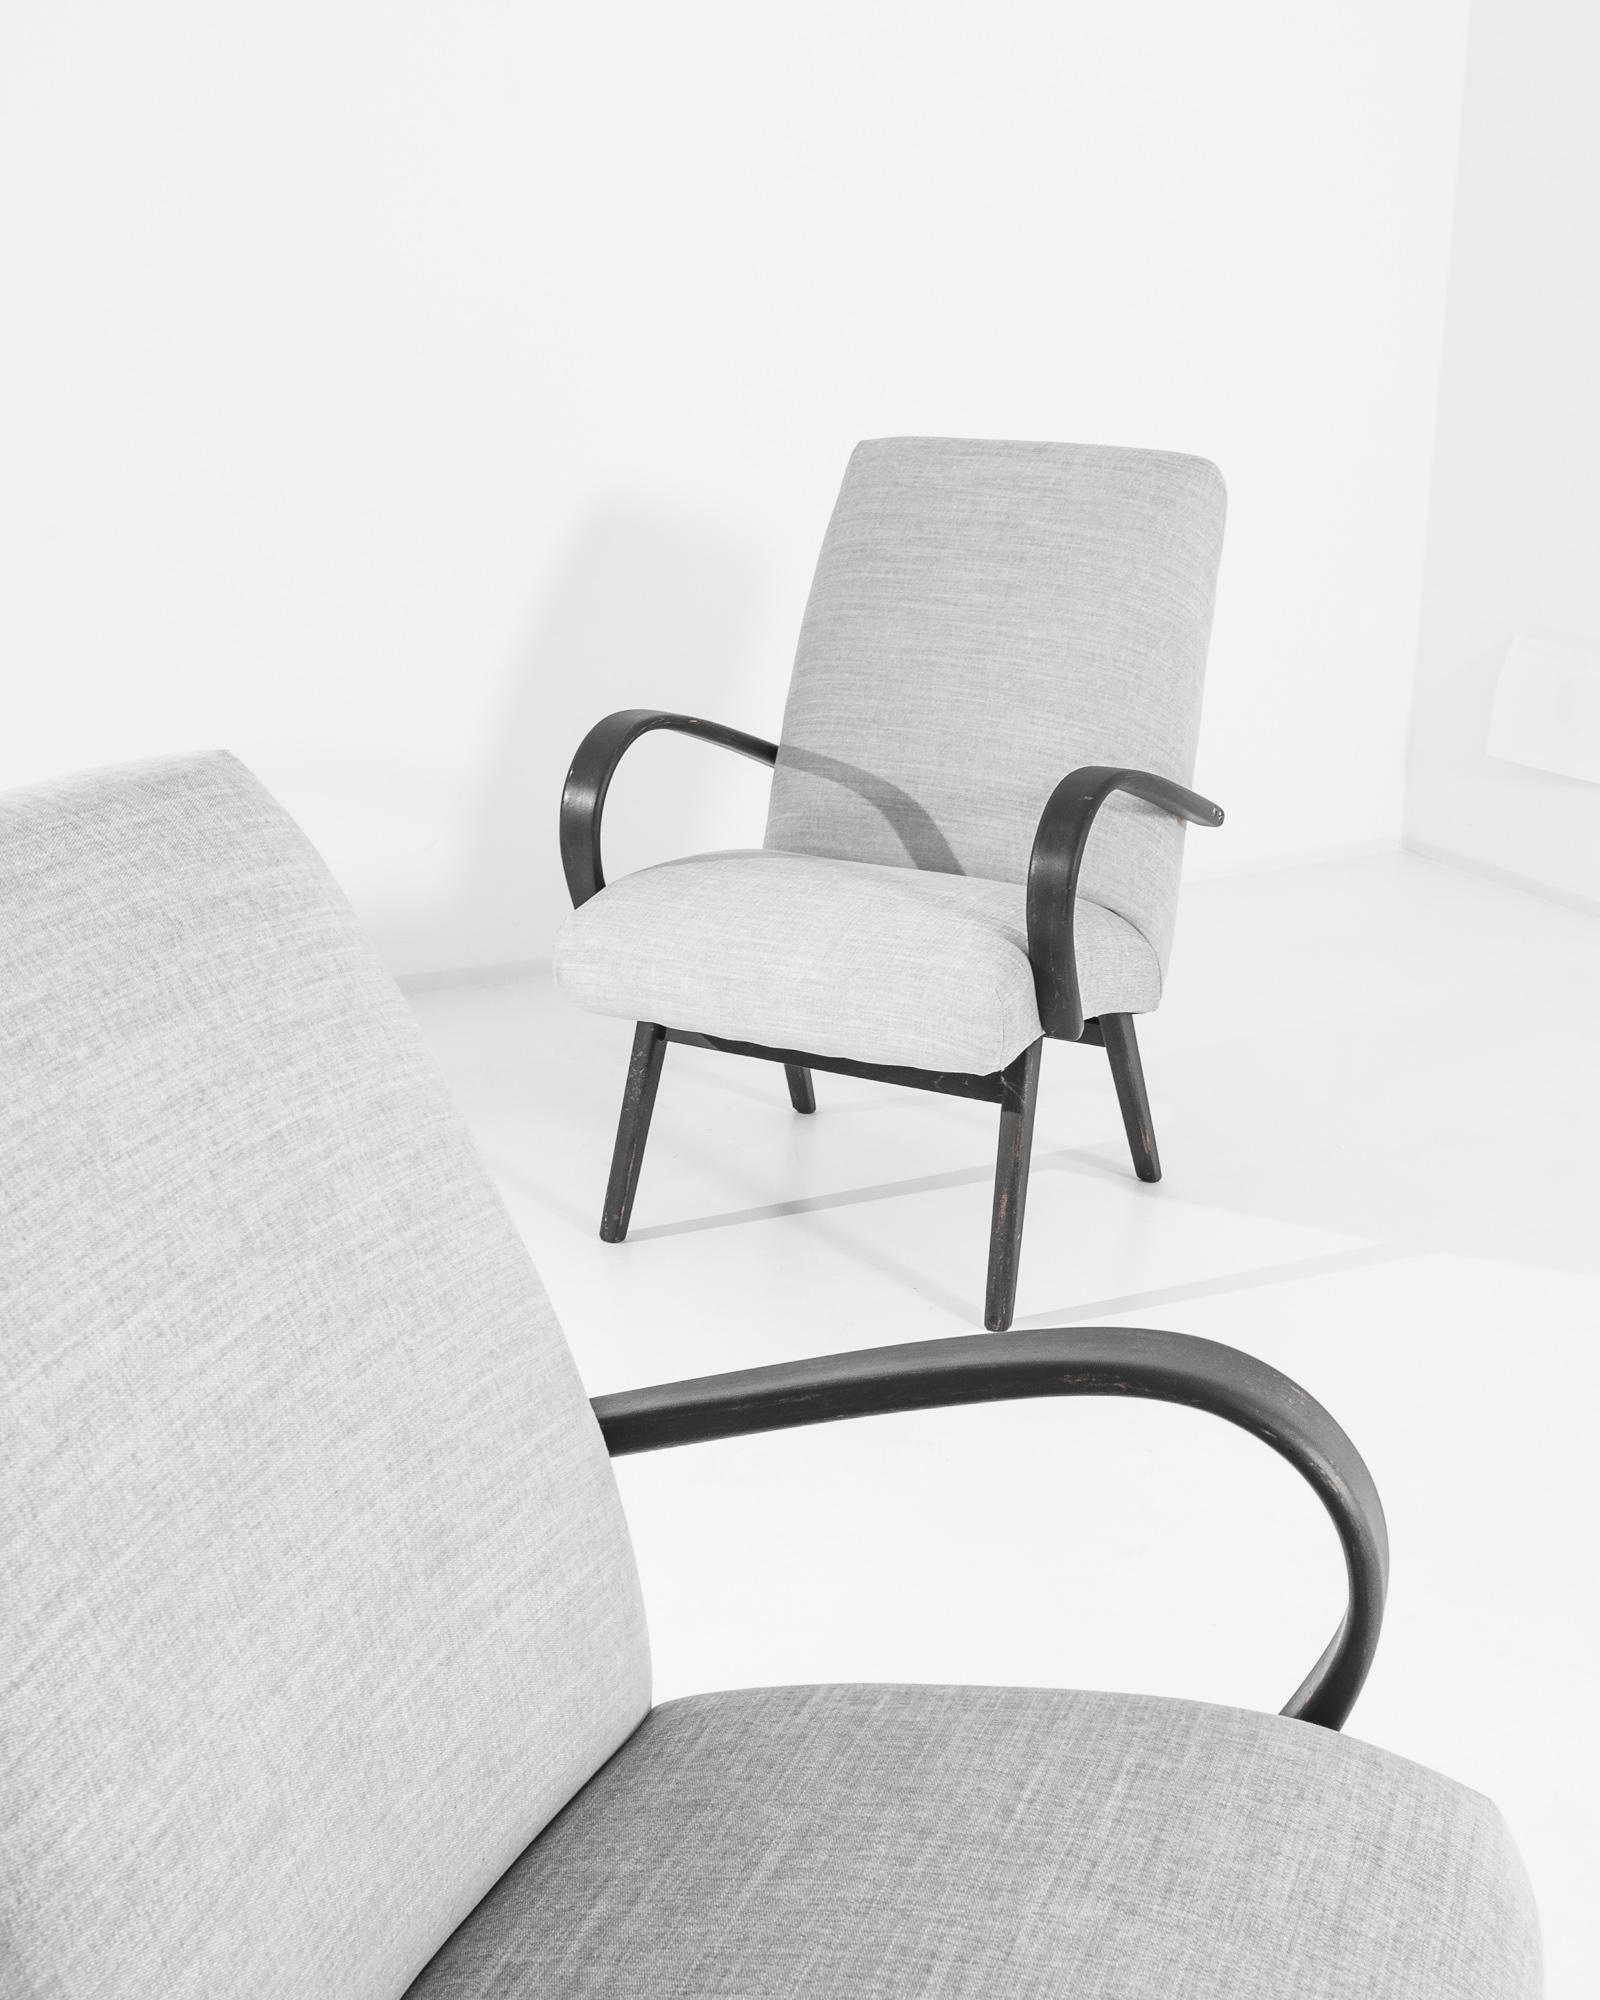 Ein Paar Sessel des tschechischen Möbeldesigners Jindrich Halabala. Dieses Design aus den 1950er Jahren ist mit einem modernen grauen Stoff bezogen. Der beruhigende Heideton wurde gewählt, um das rötliche Schwarz des Hartholzrahmens zu ergänzen.